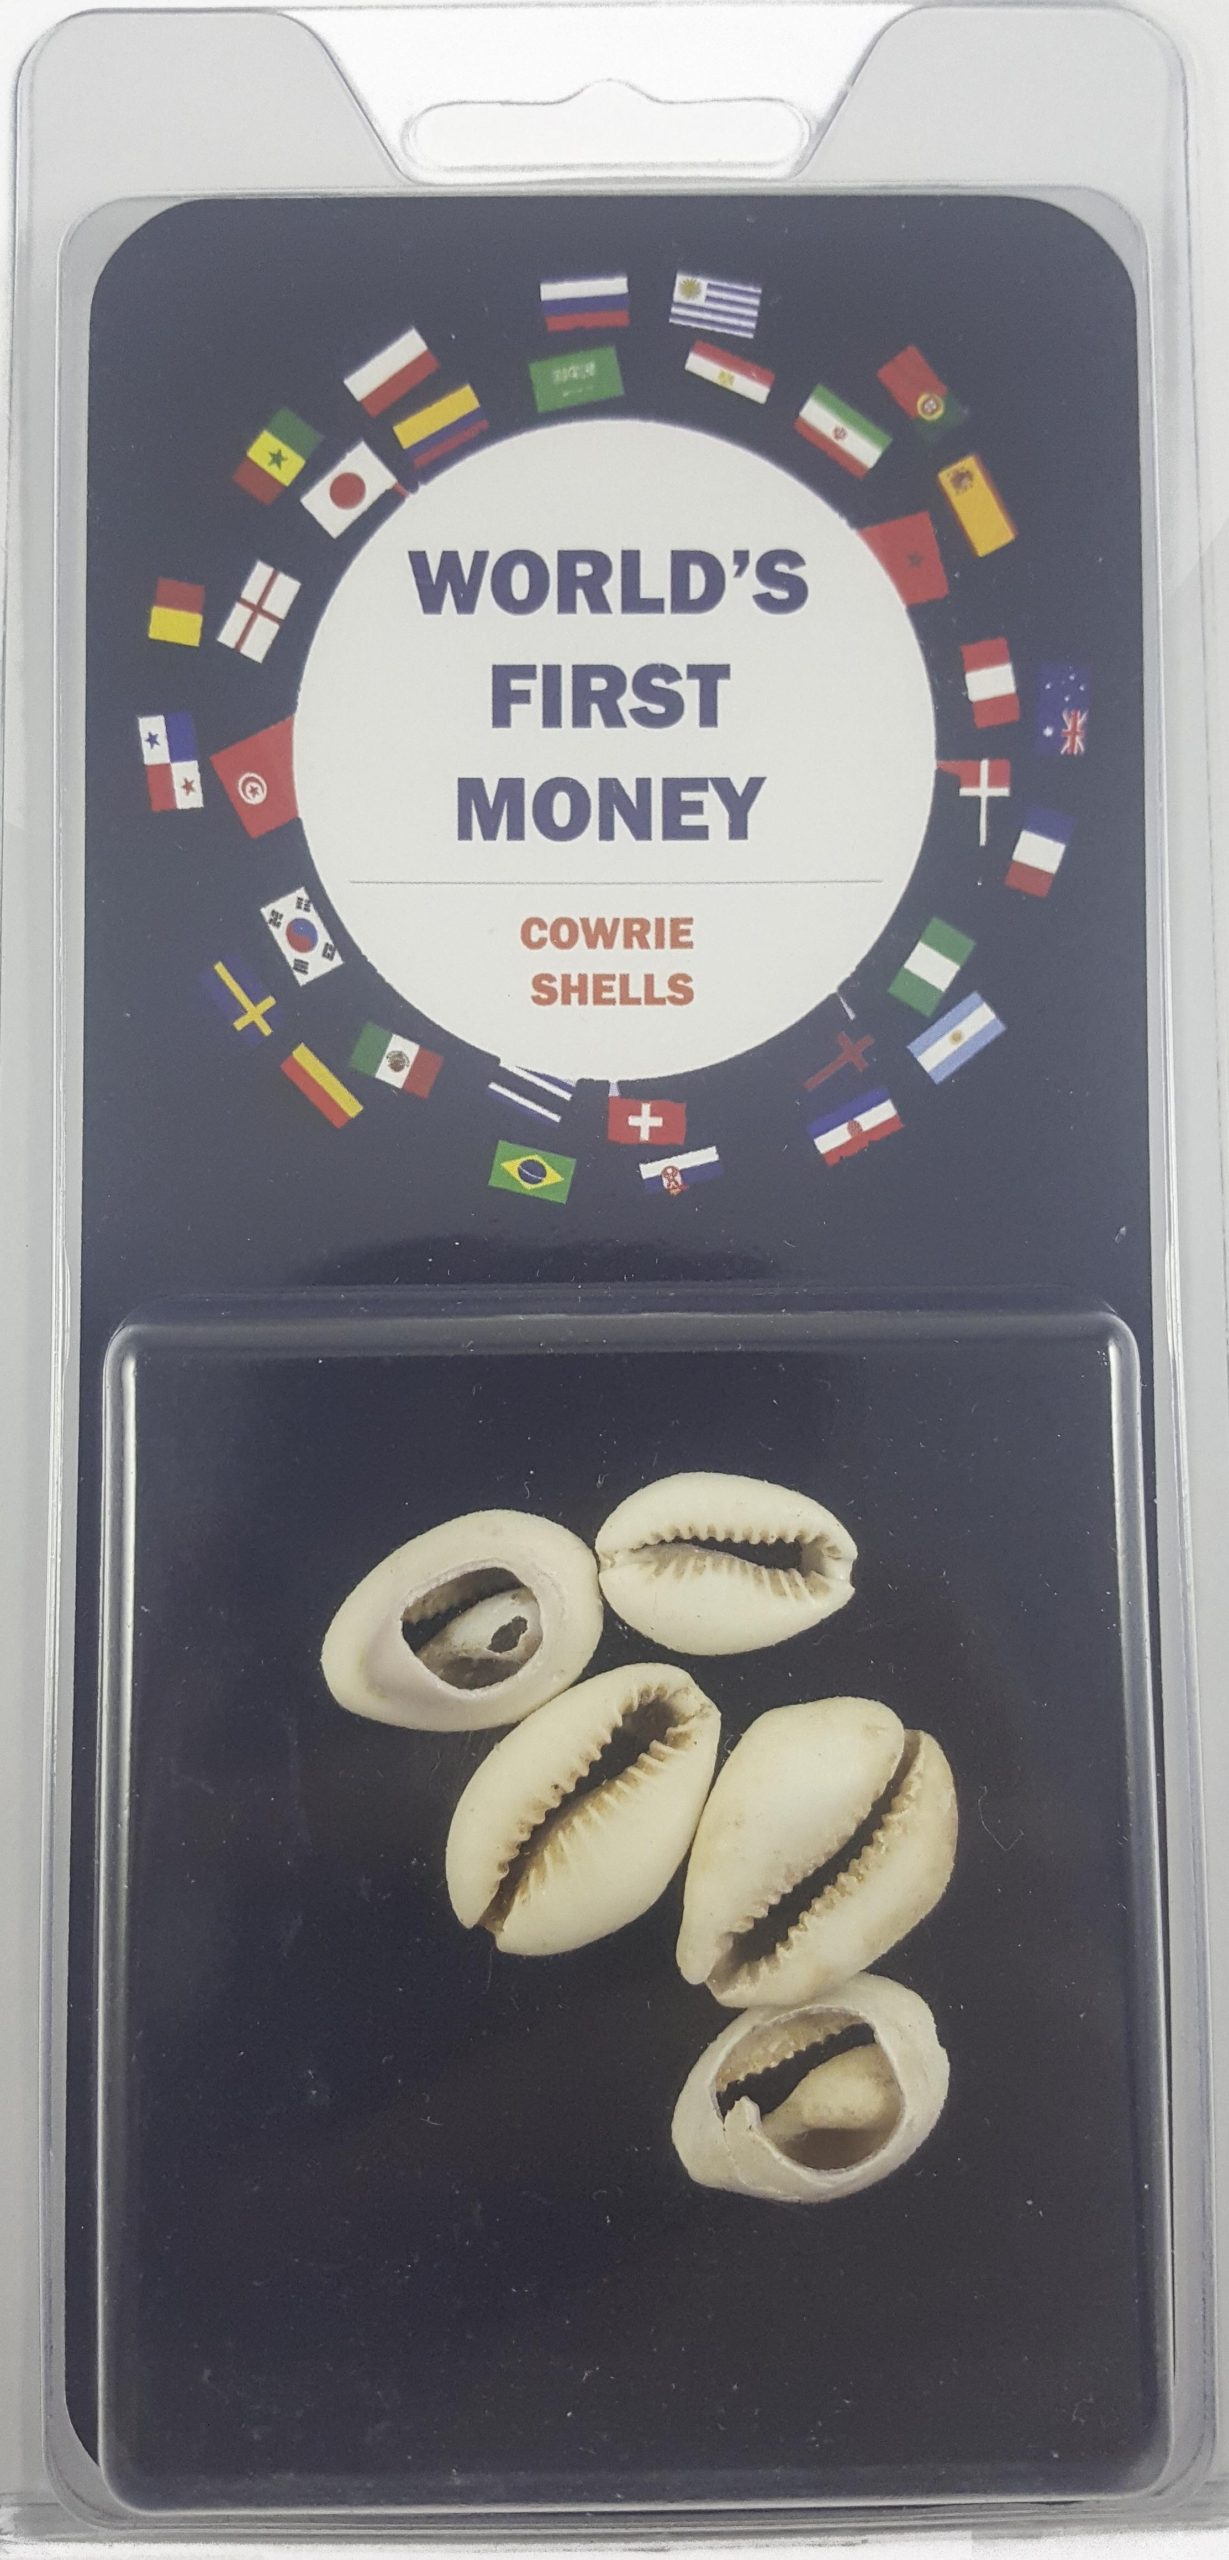 World's First Money: Cowrie Shells